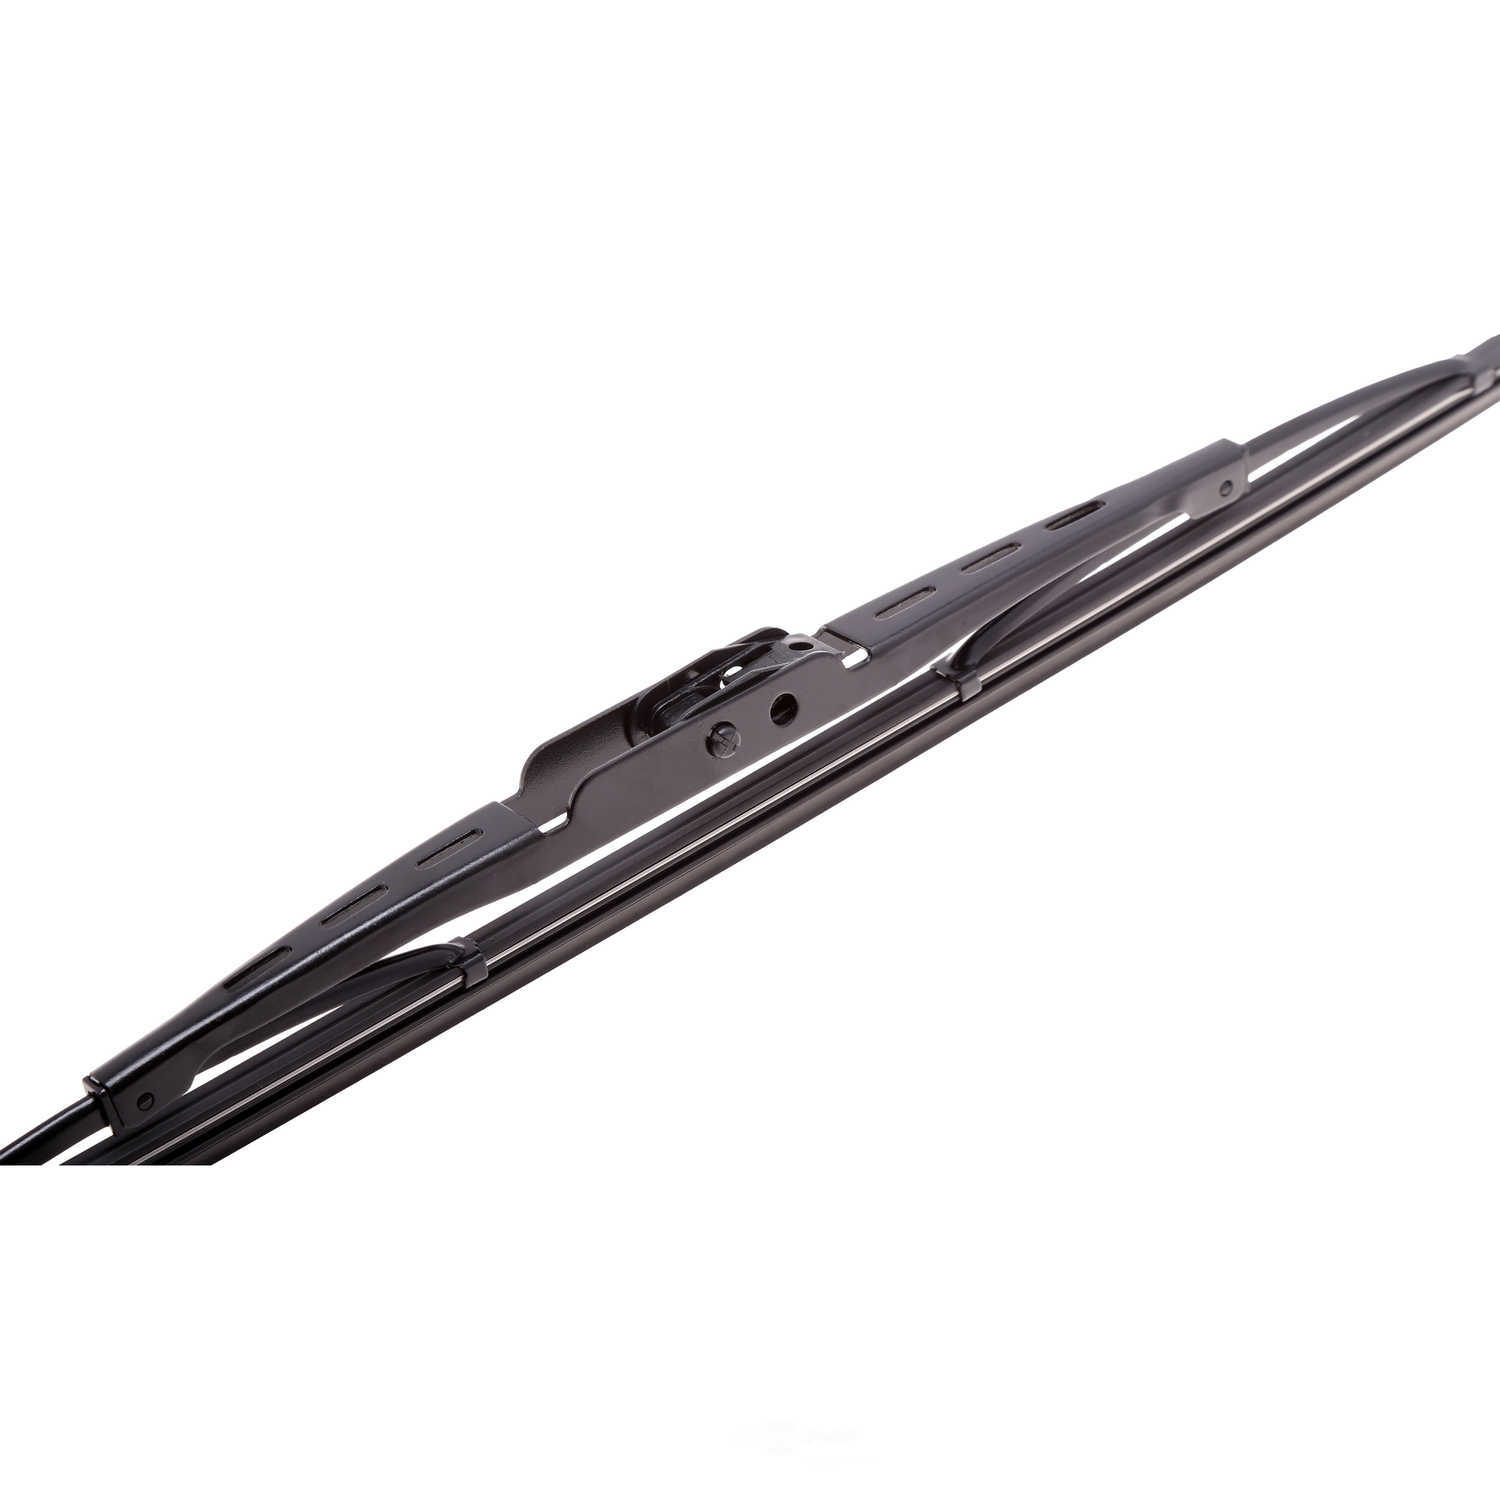 ANCO WIPER PRODUCTS - ANCO 31-Series Wiper Blade - ANC 31-13